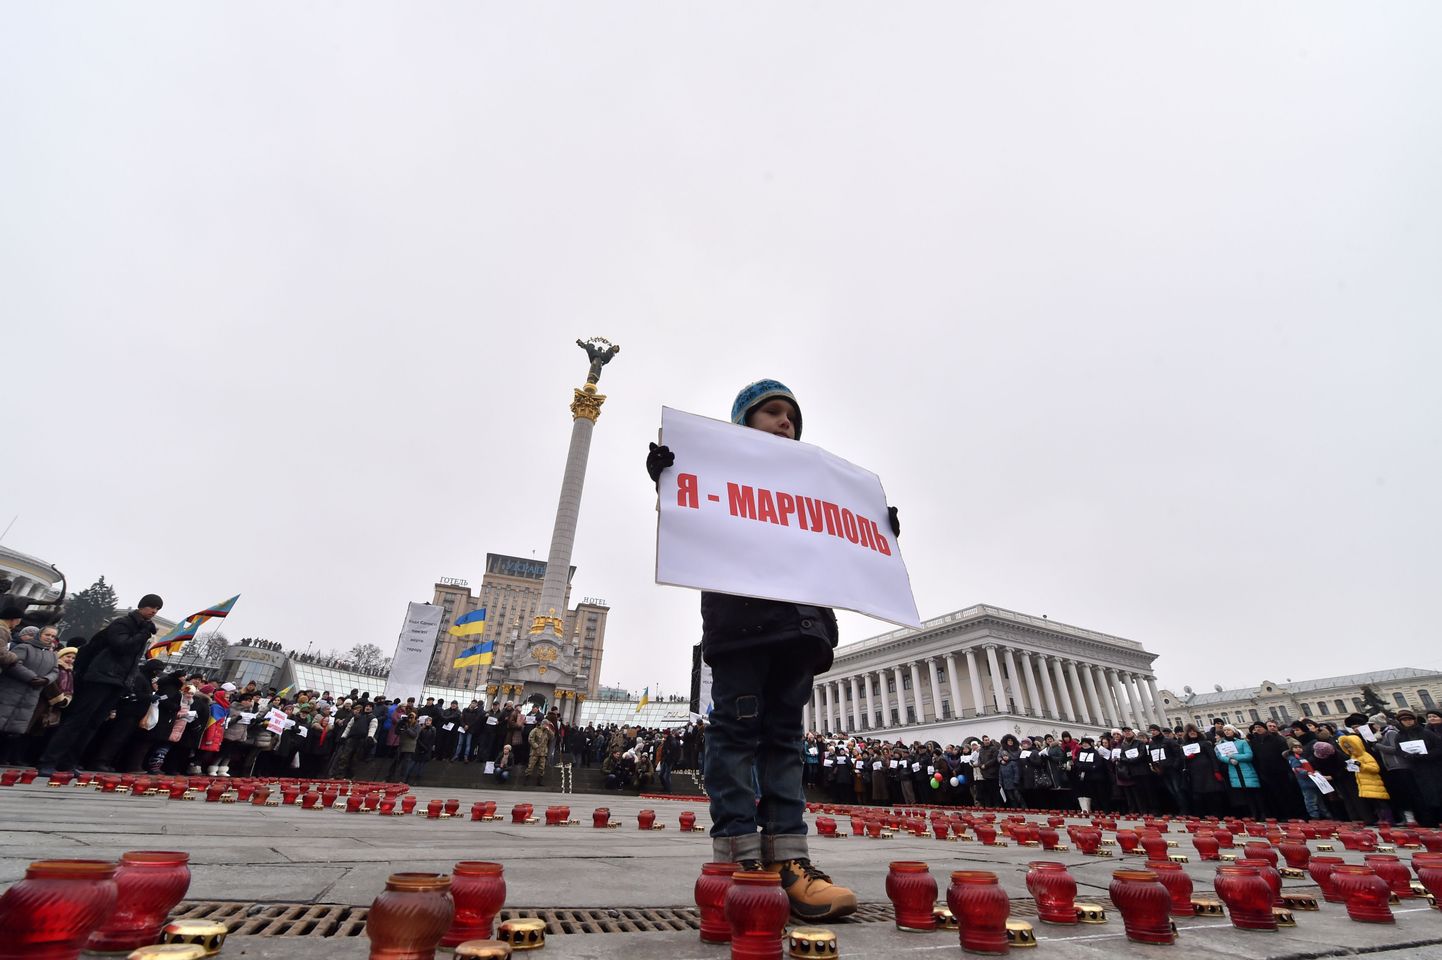 «Mina olen Mariupol,» teatab plakat väikse poisi käes meeleavaldusel, mis korraldati sadamalinnas pärast seda, kui vene võitlejad tabasid liinibussi, milles hukkus 13 tsiviilisikut.